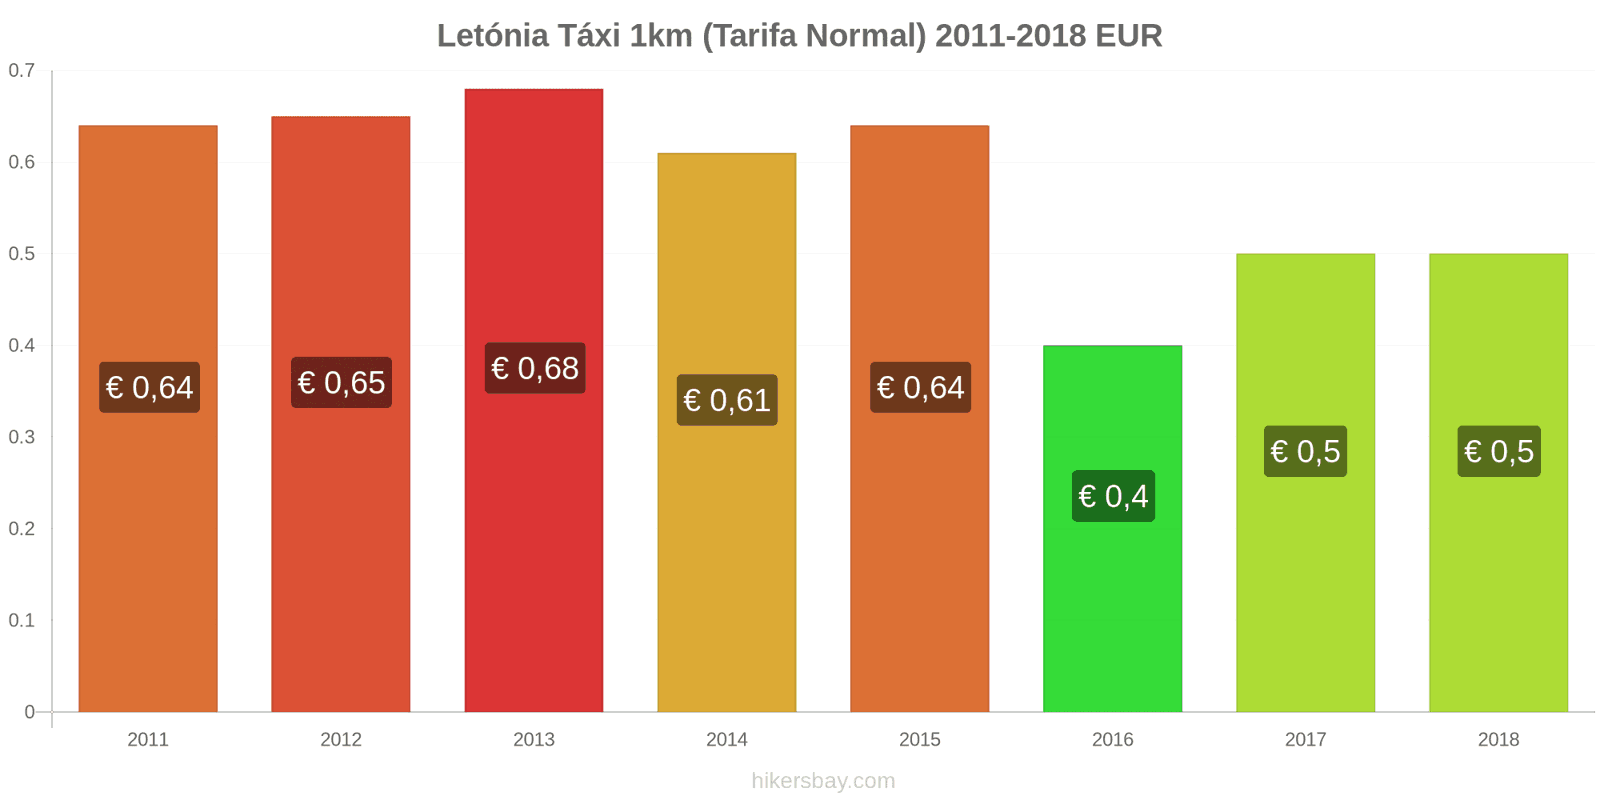 Letónia mudanças de preços Táxi 1km (Tarifa Normal) hikersbay.com